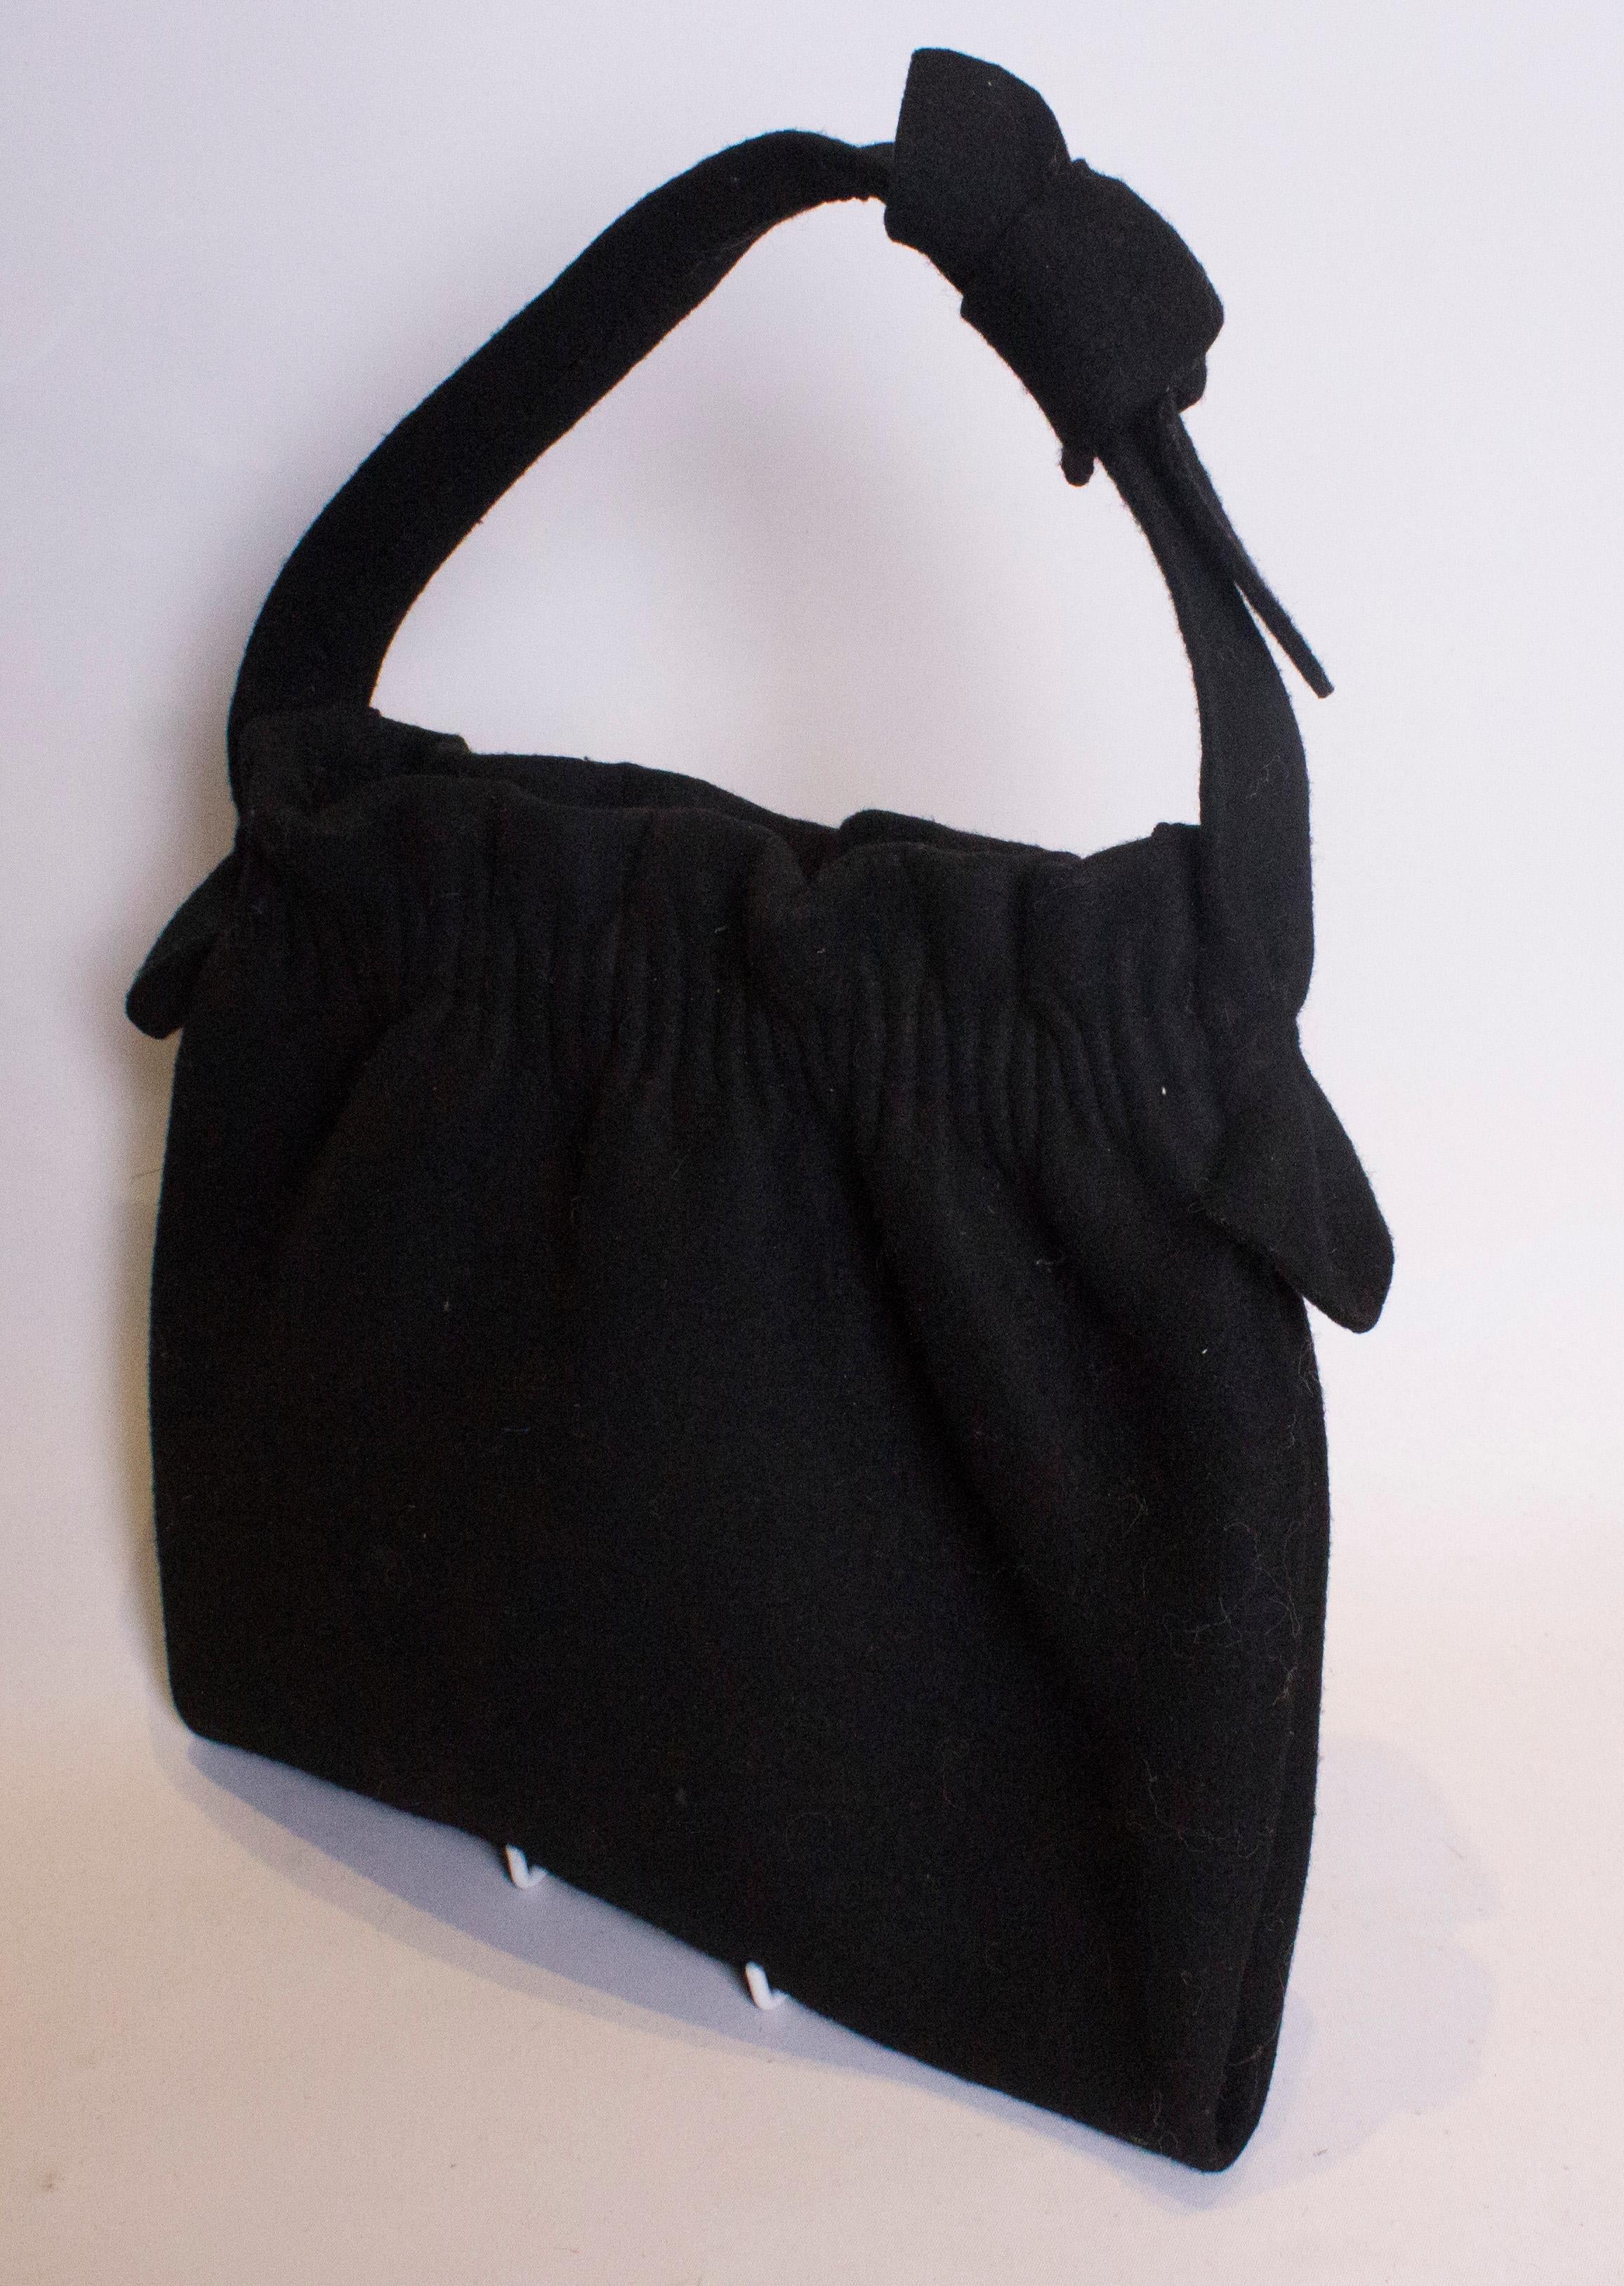 Un sac en feutre noir vintage coupé qui est assez grand pour les essentiels d'aujourd'hui. Le sac est froncé sur le dessus et muni d'une poignée.
Dimensions : largeur 11  1/2'', hauteur 11'' profondeur 1 1/2''